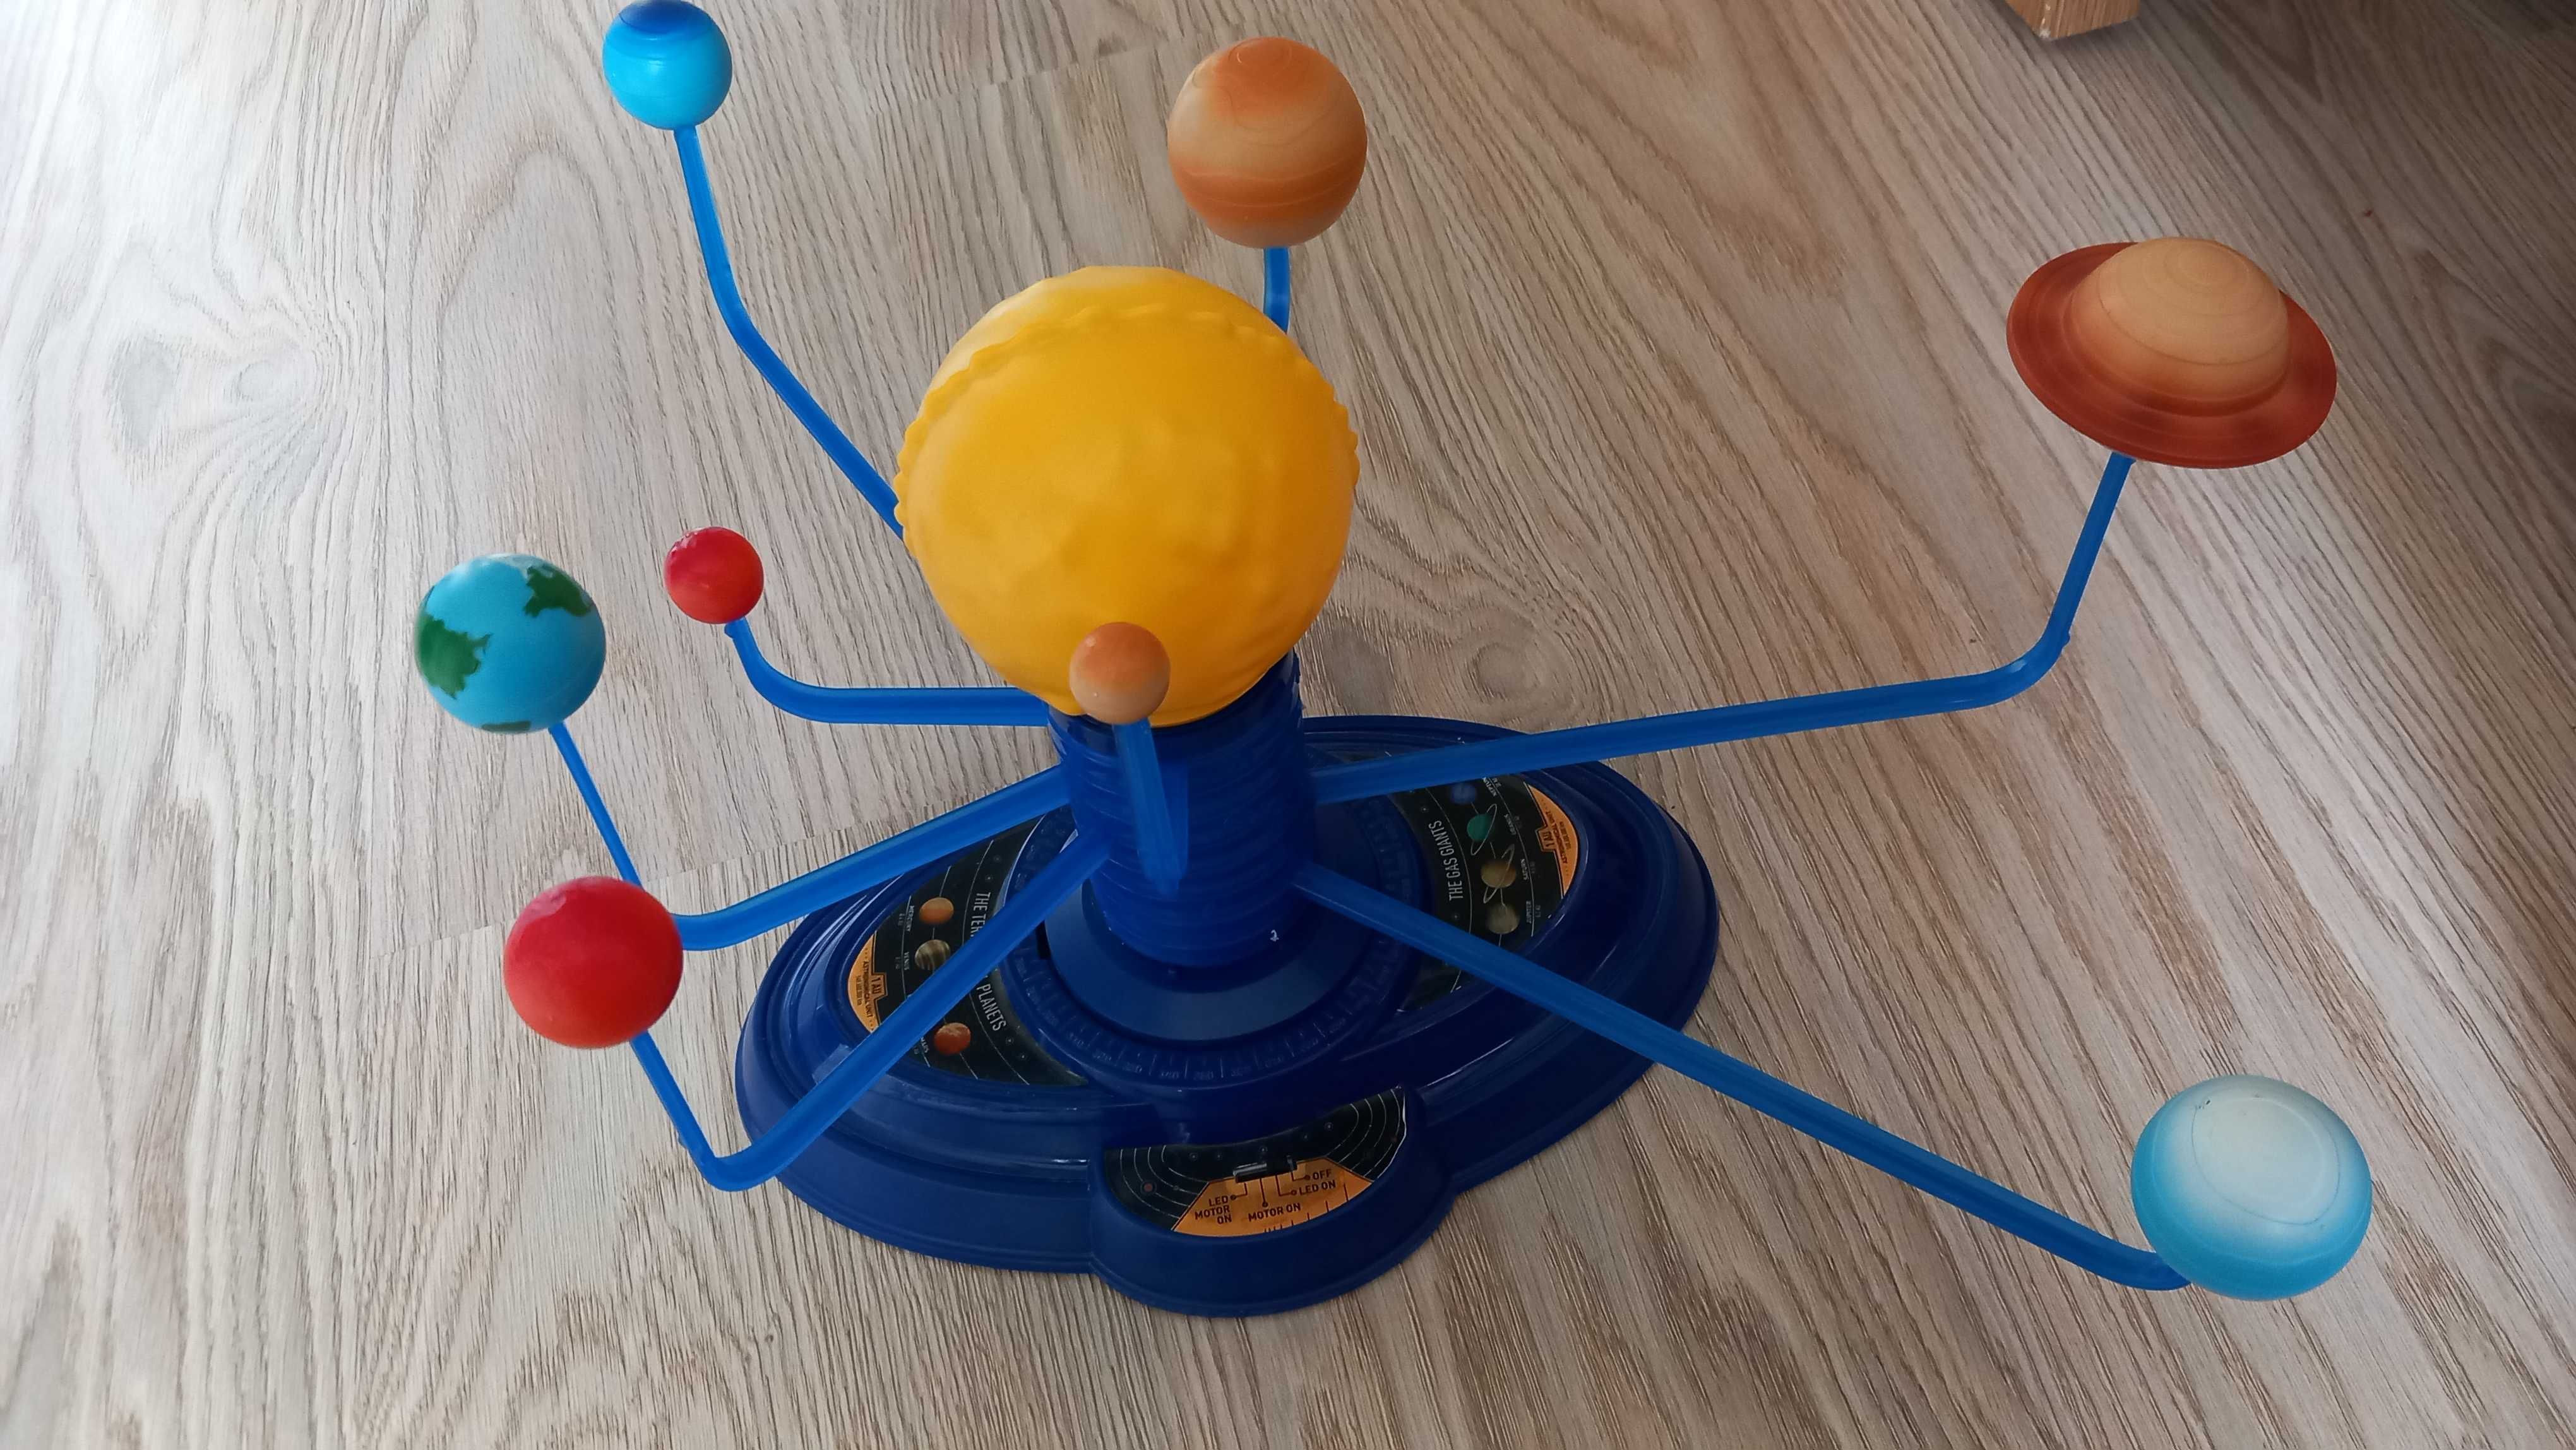 Układ słoneczny Clementoni naukowa zabawa - niepewny mechanizm